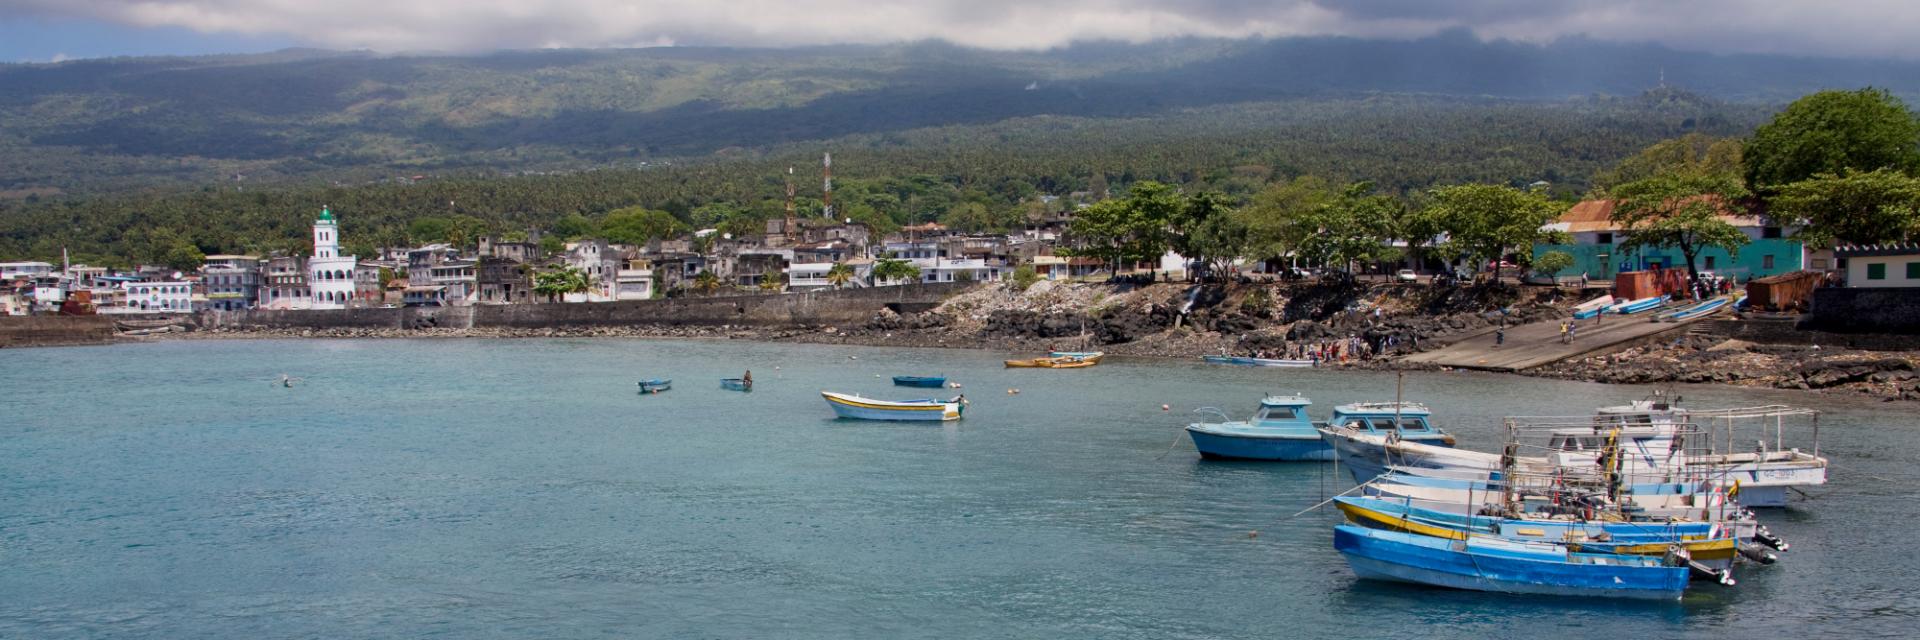 l’Union des Comores organise un atelier de concertation sur la participation de l’Union des Comores à la Zone de libre-échange continentale africaine (ZLECAf)